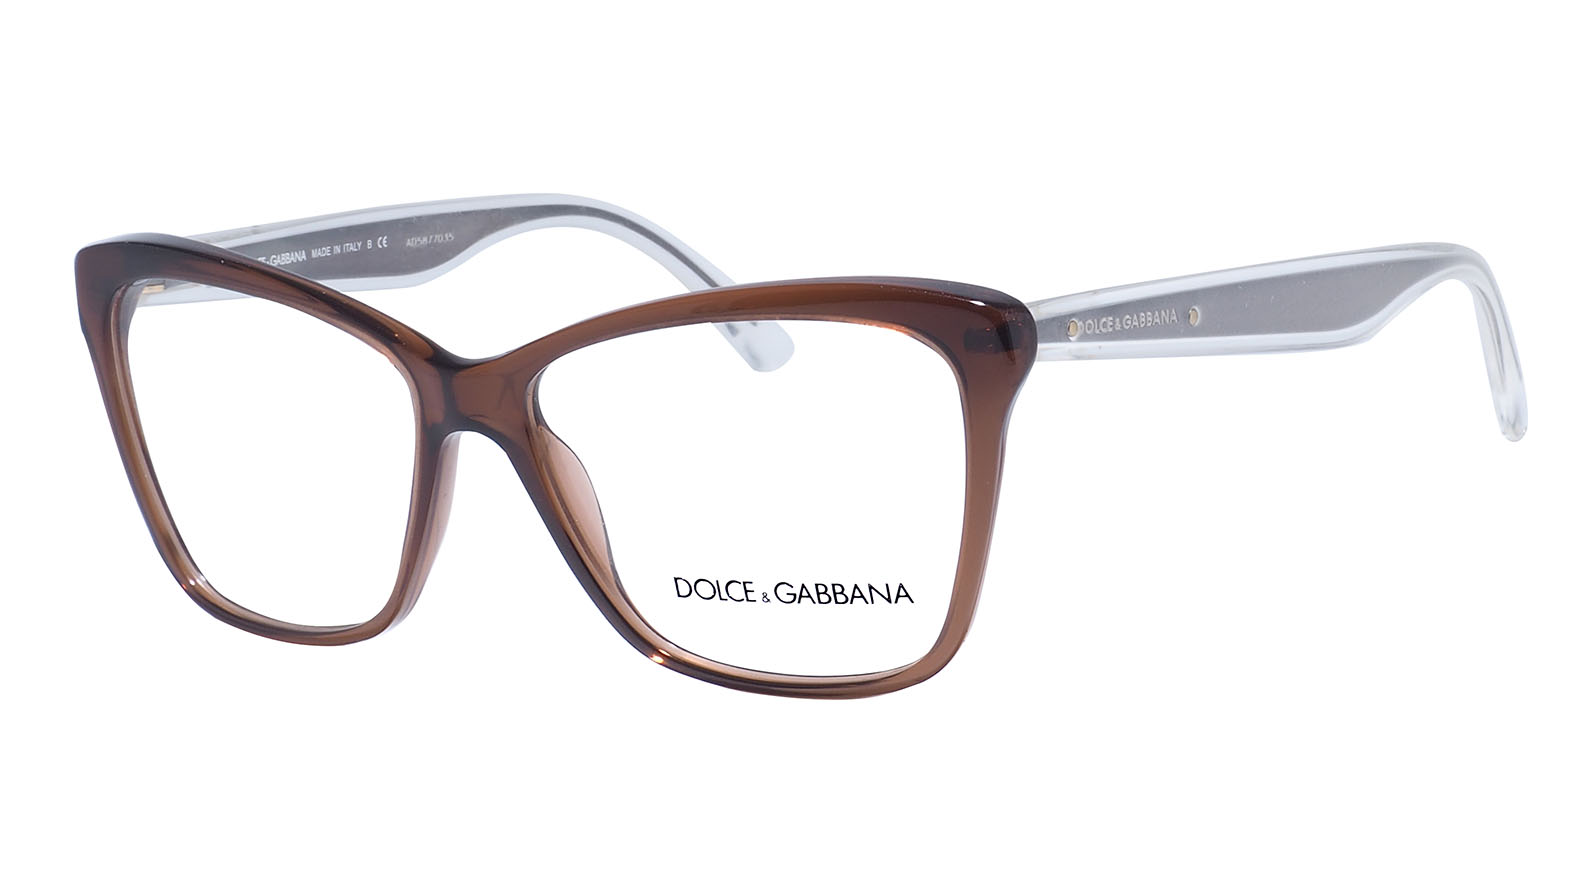 Dolce&Gabbana 3140 2542 m micallef ananda dolce 30